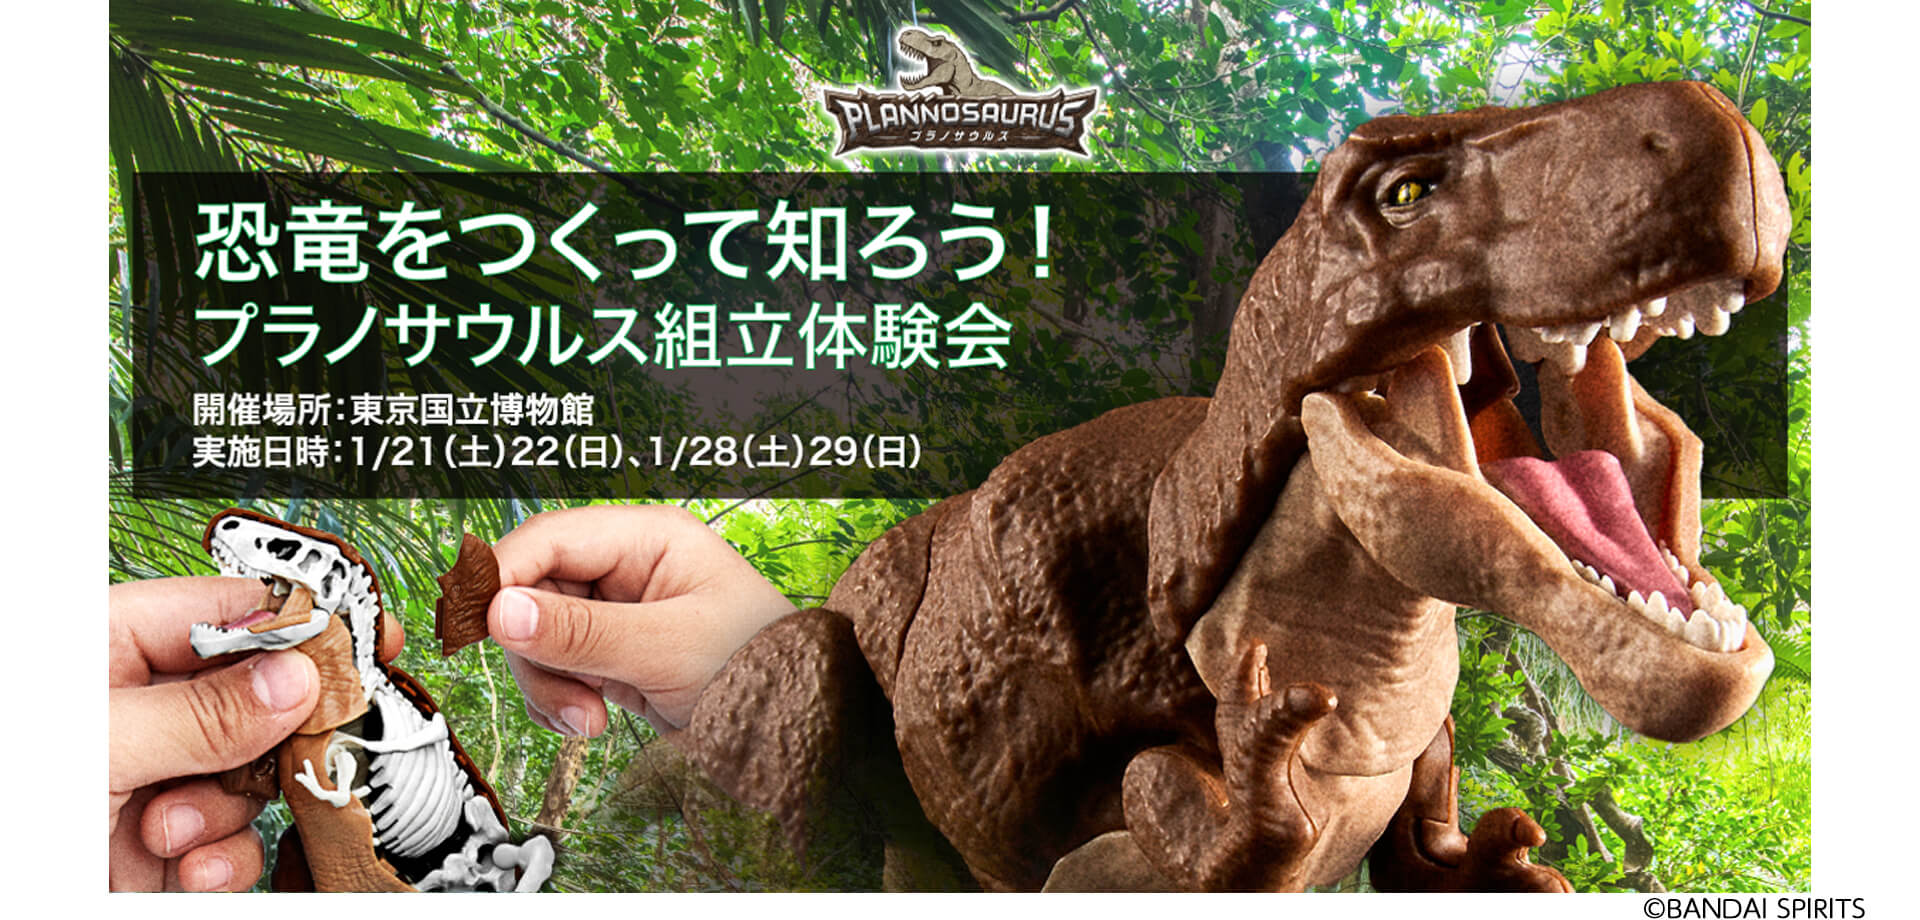 『恐竜をつくって知ろう！プラノサウルス組立体験会』東京国立博物館（平成館）バンダイナムコ